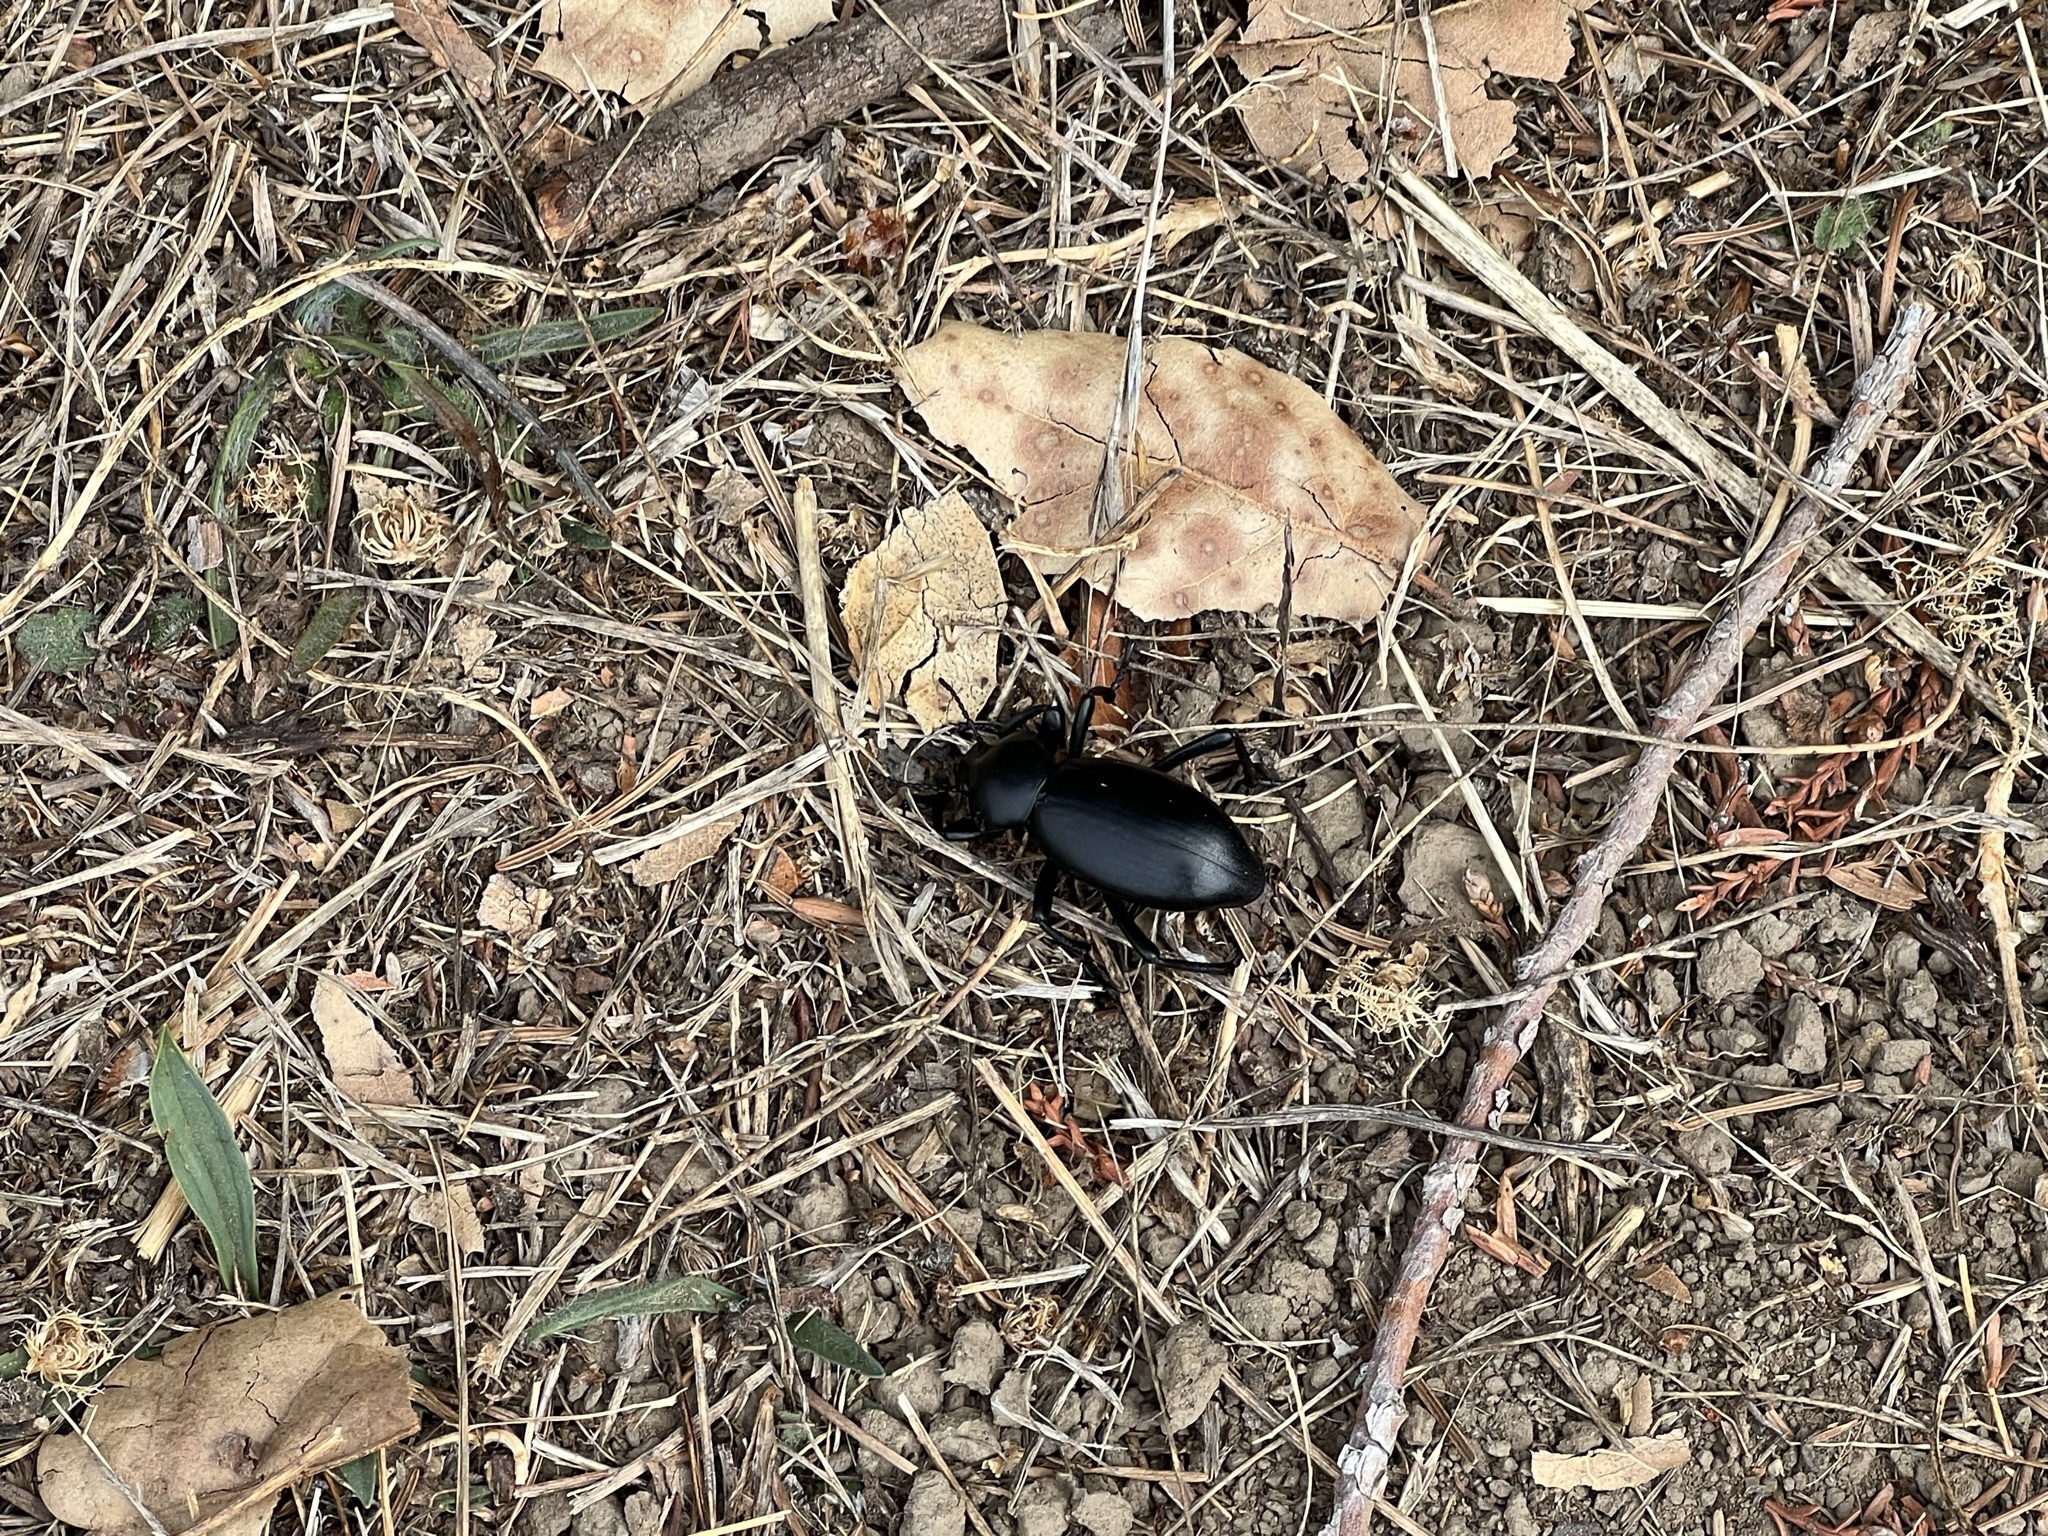 折反回来的道路上碰到一个大甲虫，但似乎不怎么会活动了